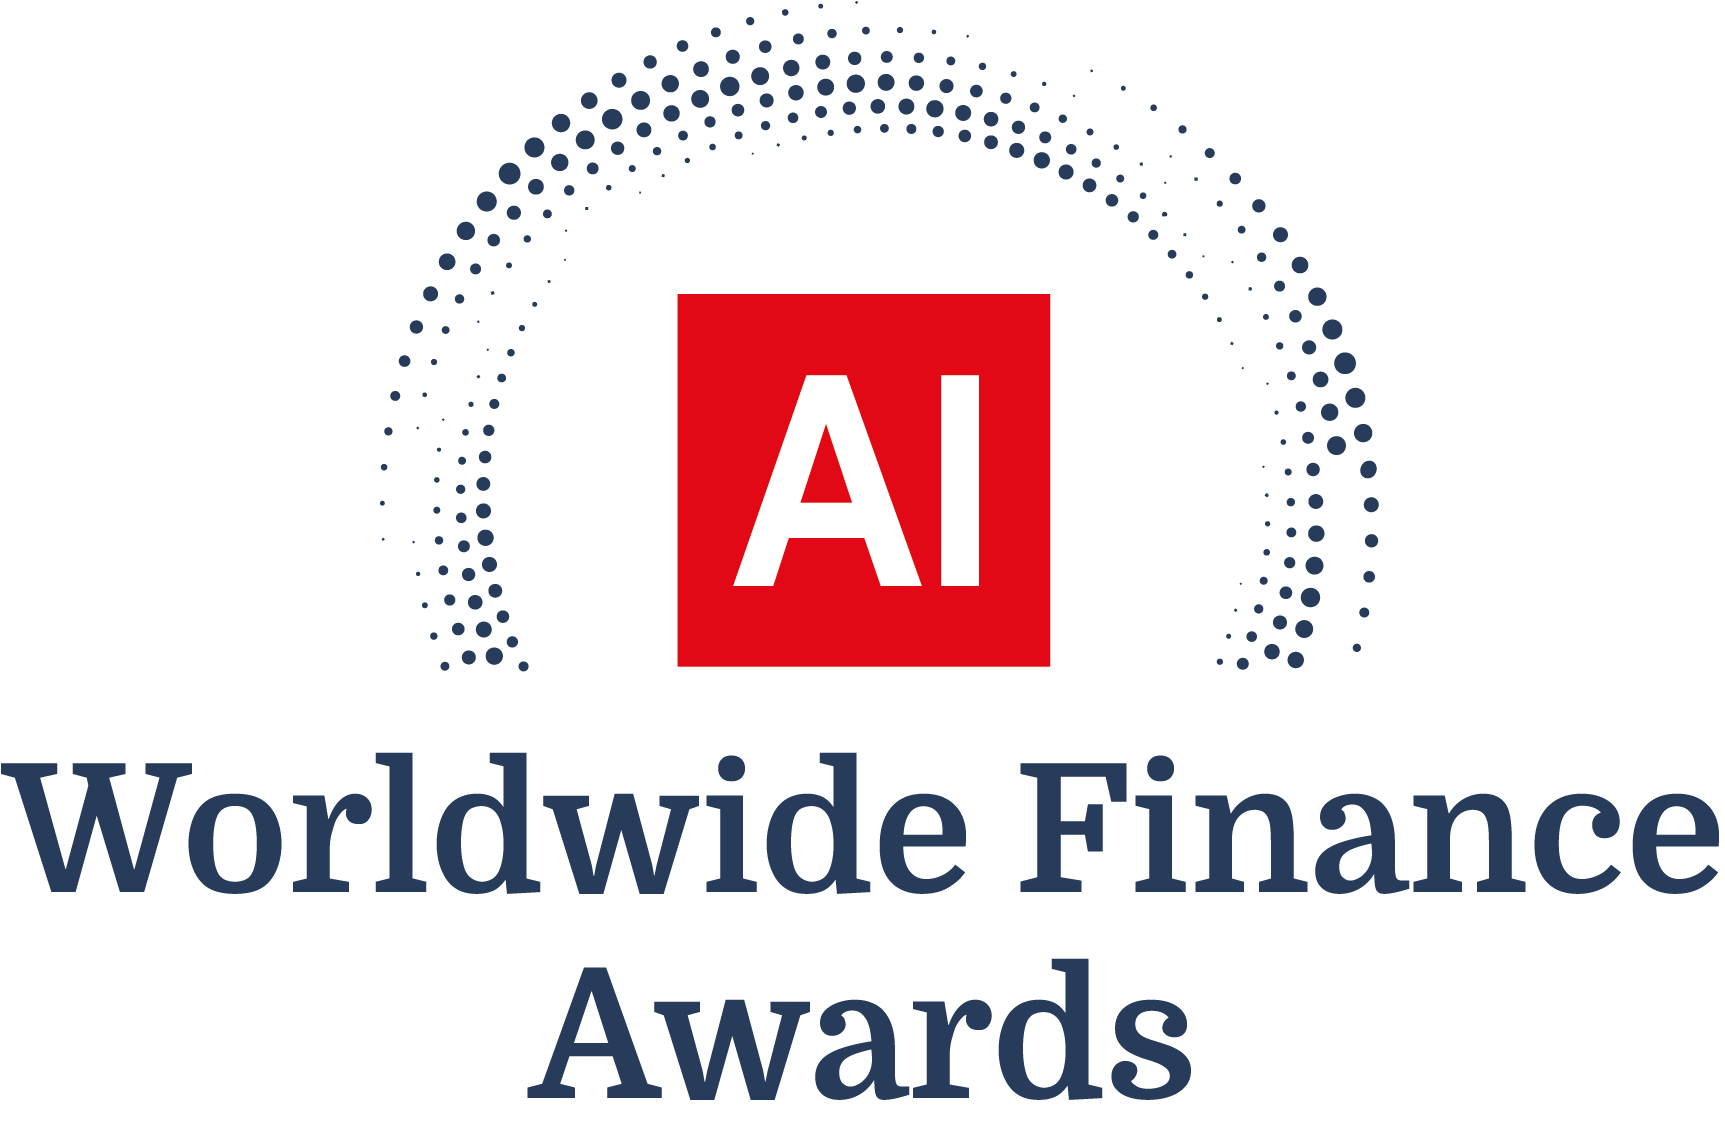 Award Logo - Worldwide Finance Awards